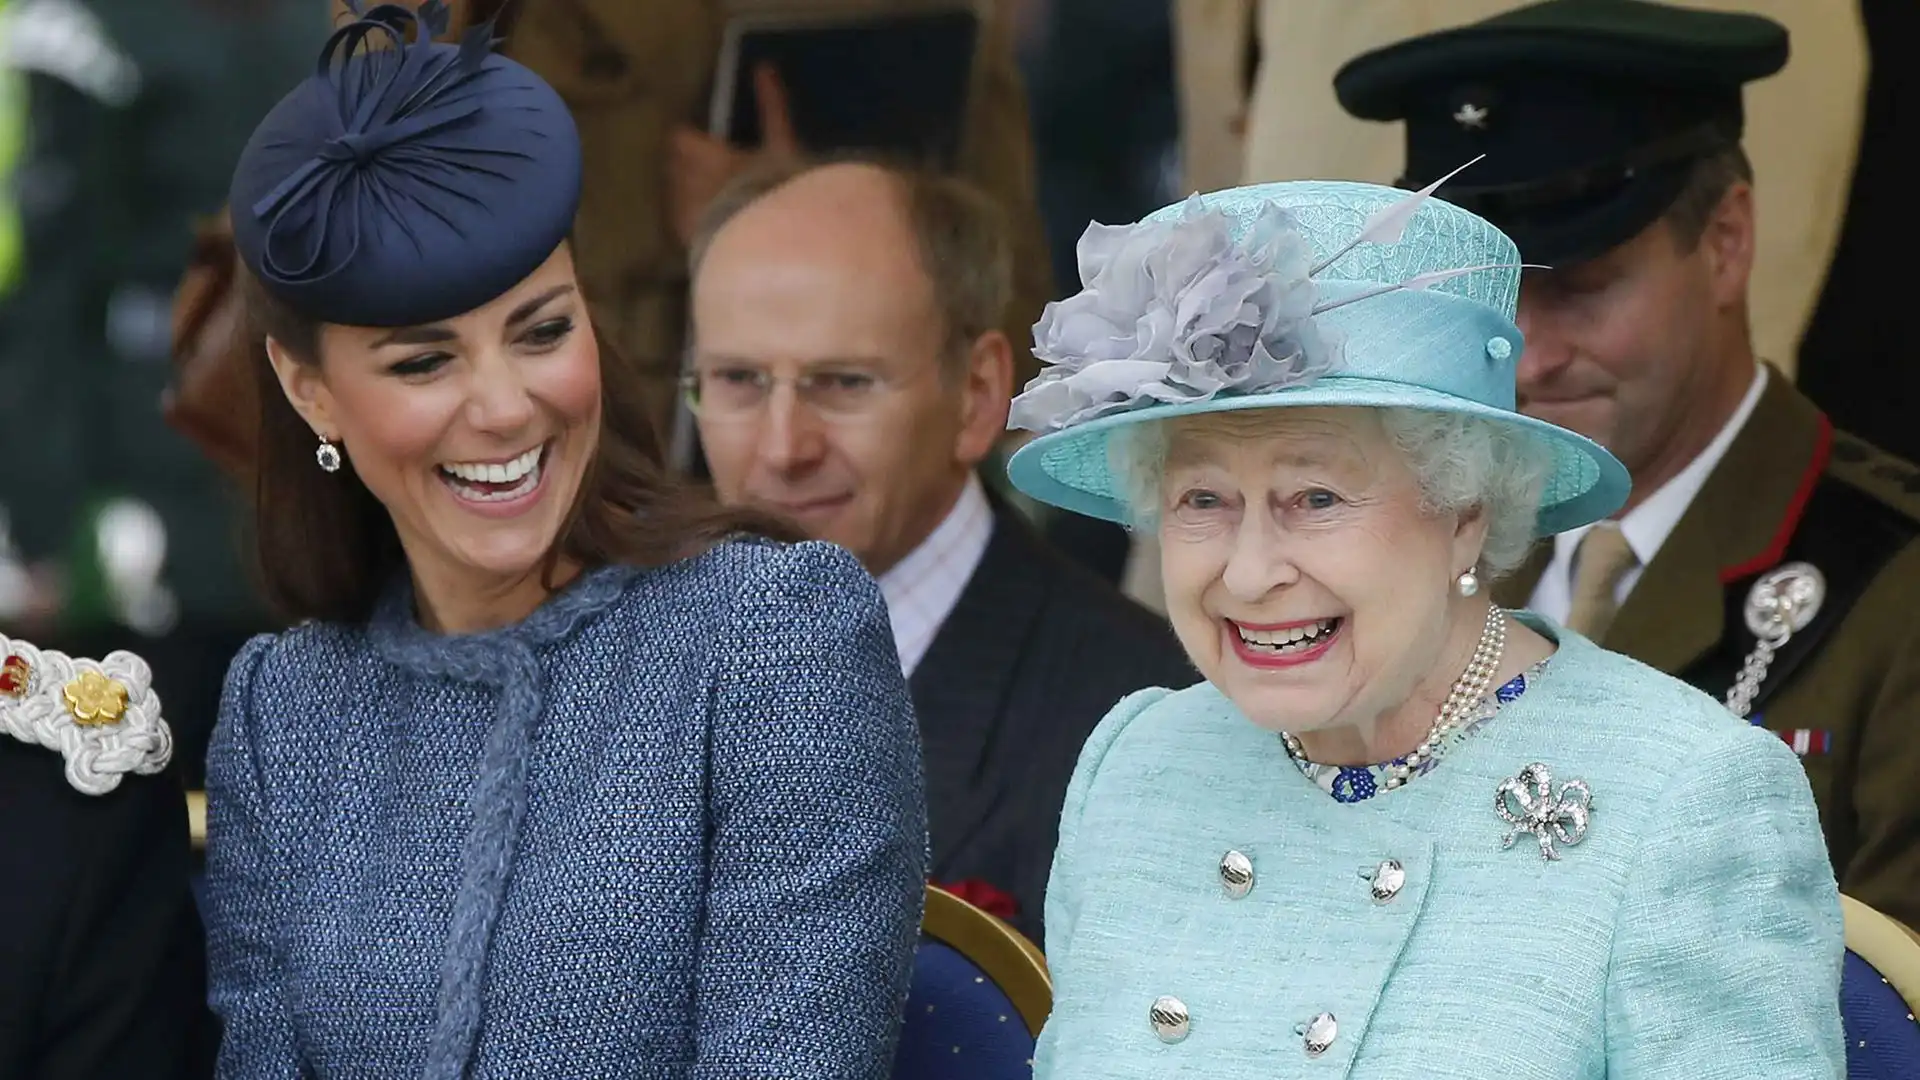 La principessa del Galles è spesso presente a eventi che si svolgono in Gran Bretagna e non solo